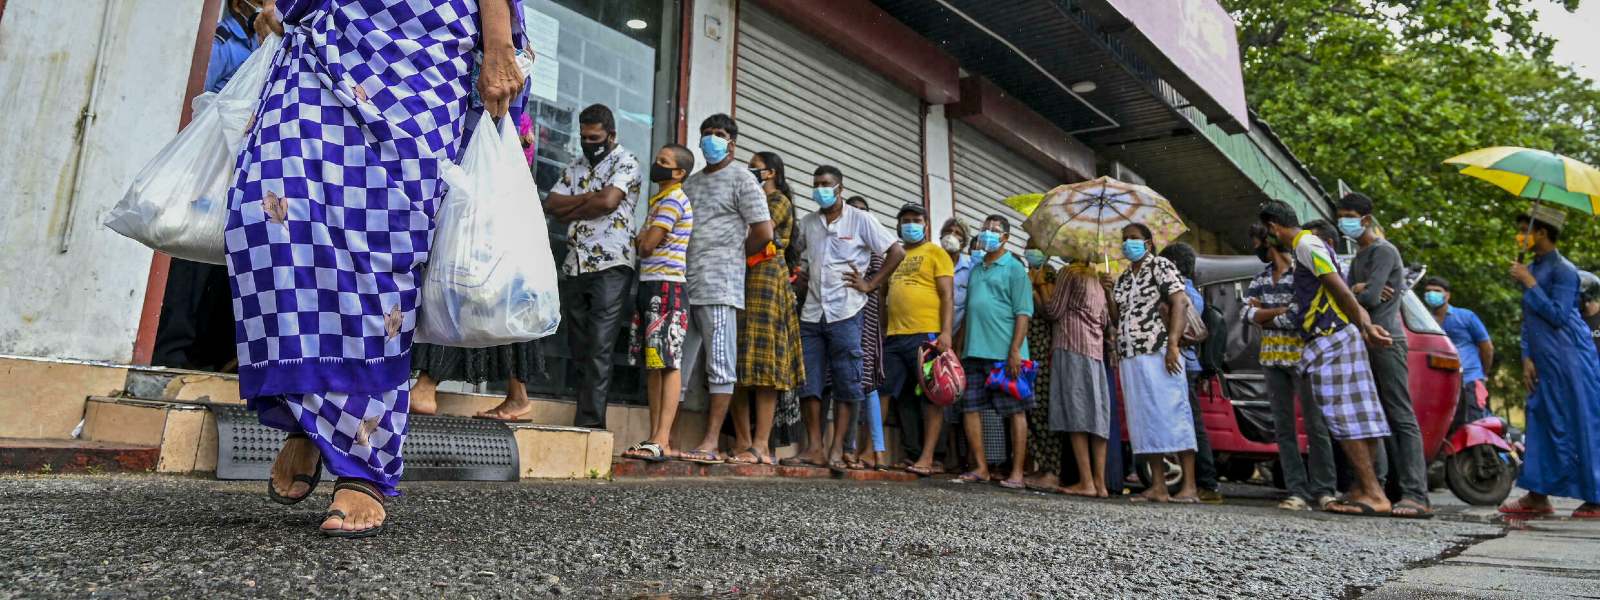 Goods Prices in Sri Lanka set to skyrocket